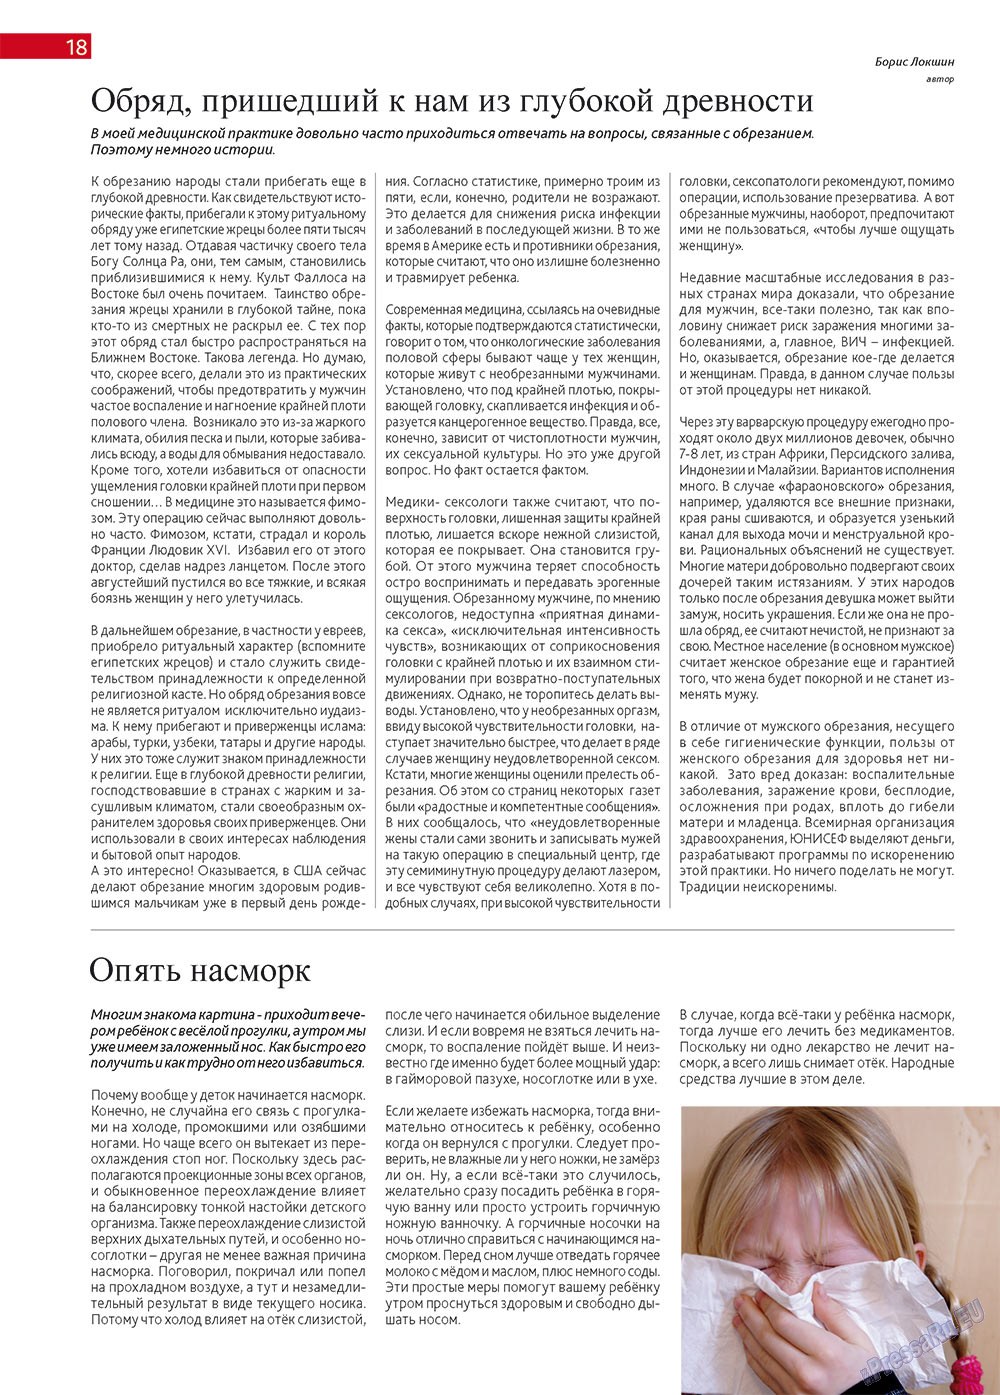 Афиша Augsburg, журнал. 2013 №1 стр.18